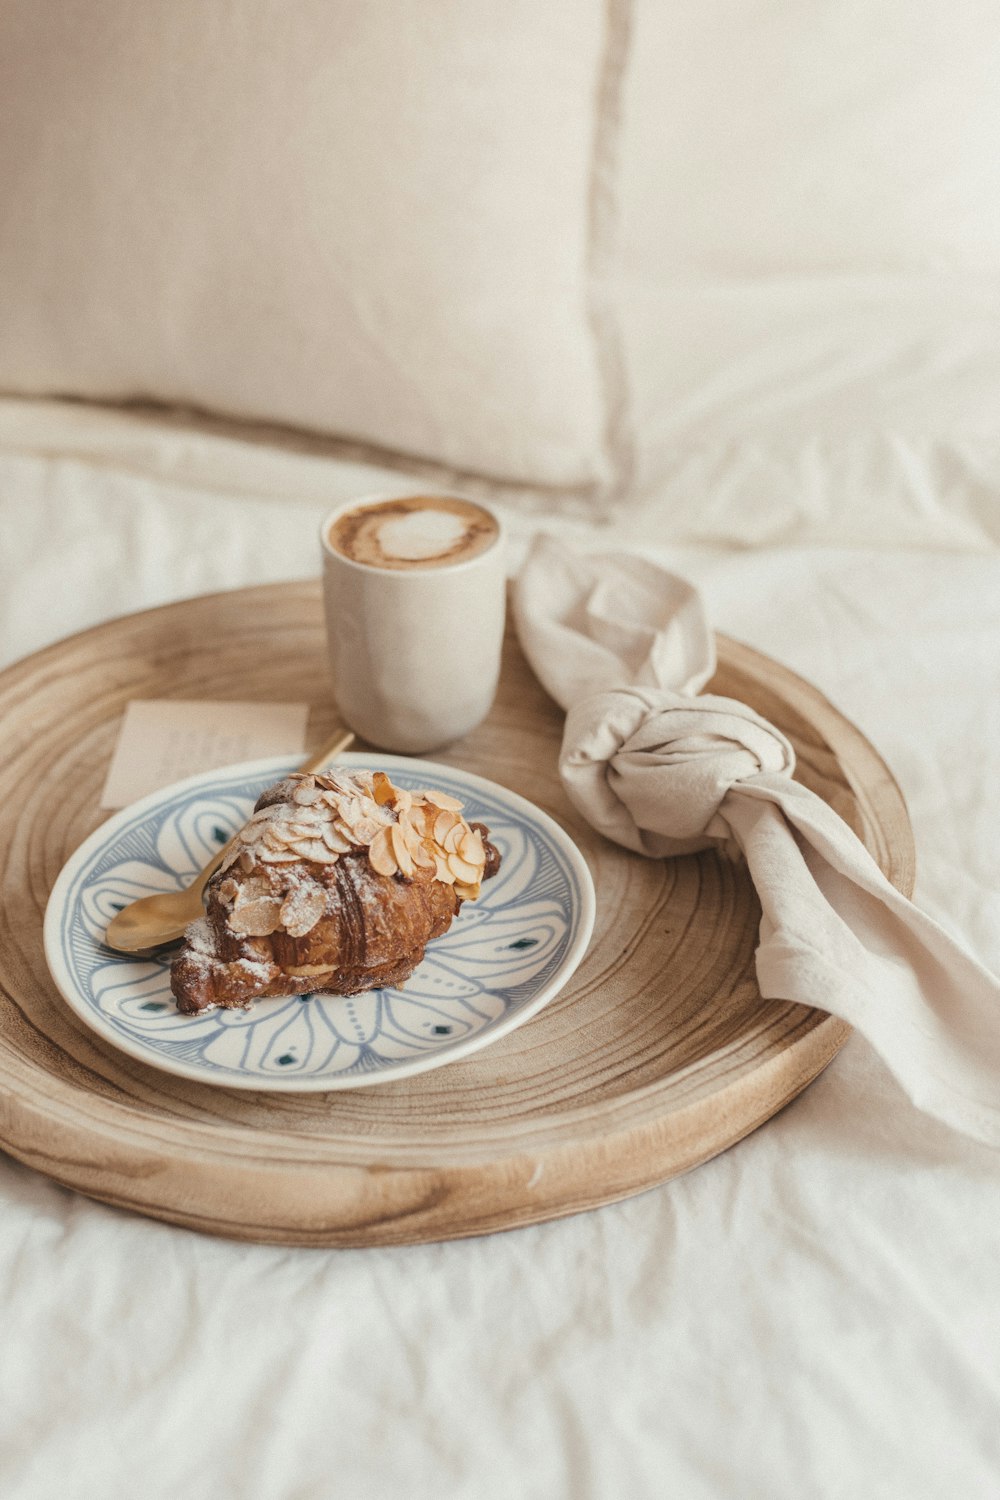 pain brun sur assiette en céramique blanche à côté d’une tasse en céramique blanche sur une table en bois brun